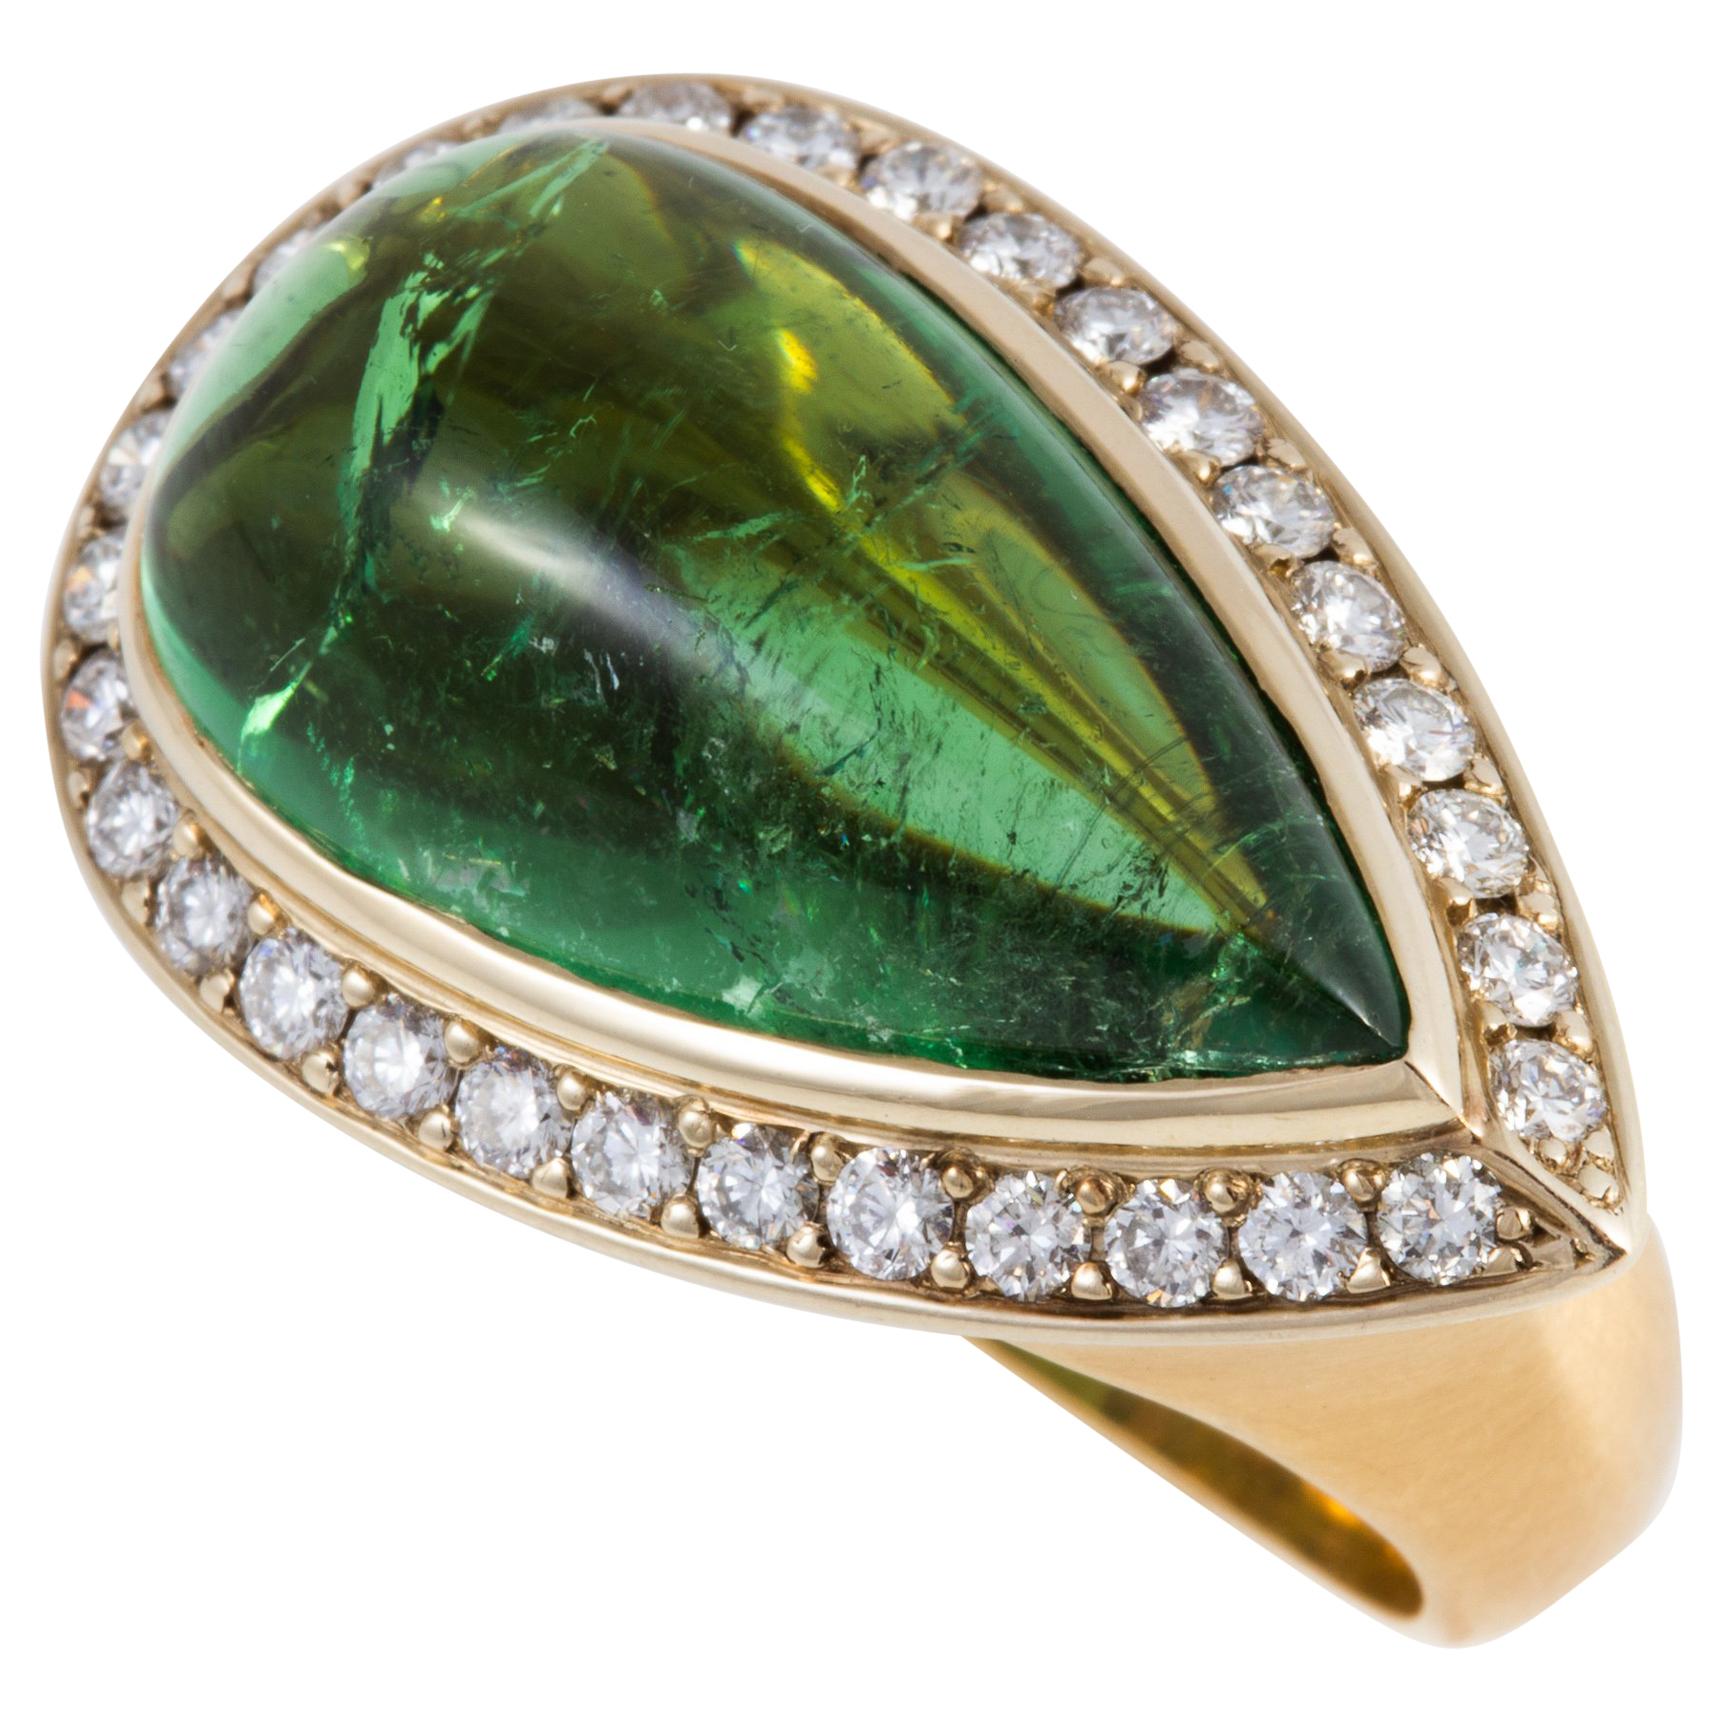 Exquisite 12.4 carat Green Tourmaline Cabochon Ring set in 18 karat Gold